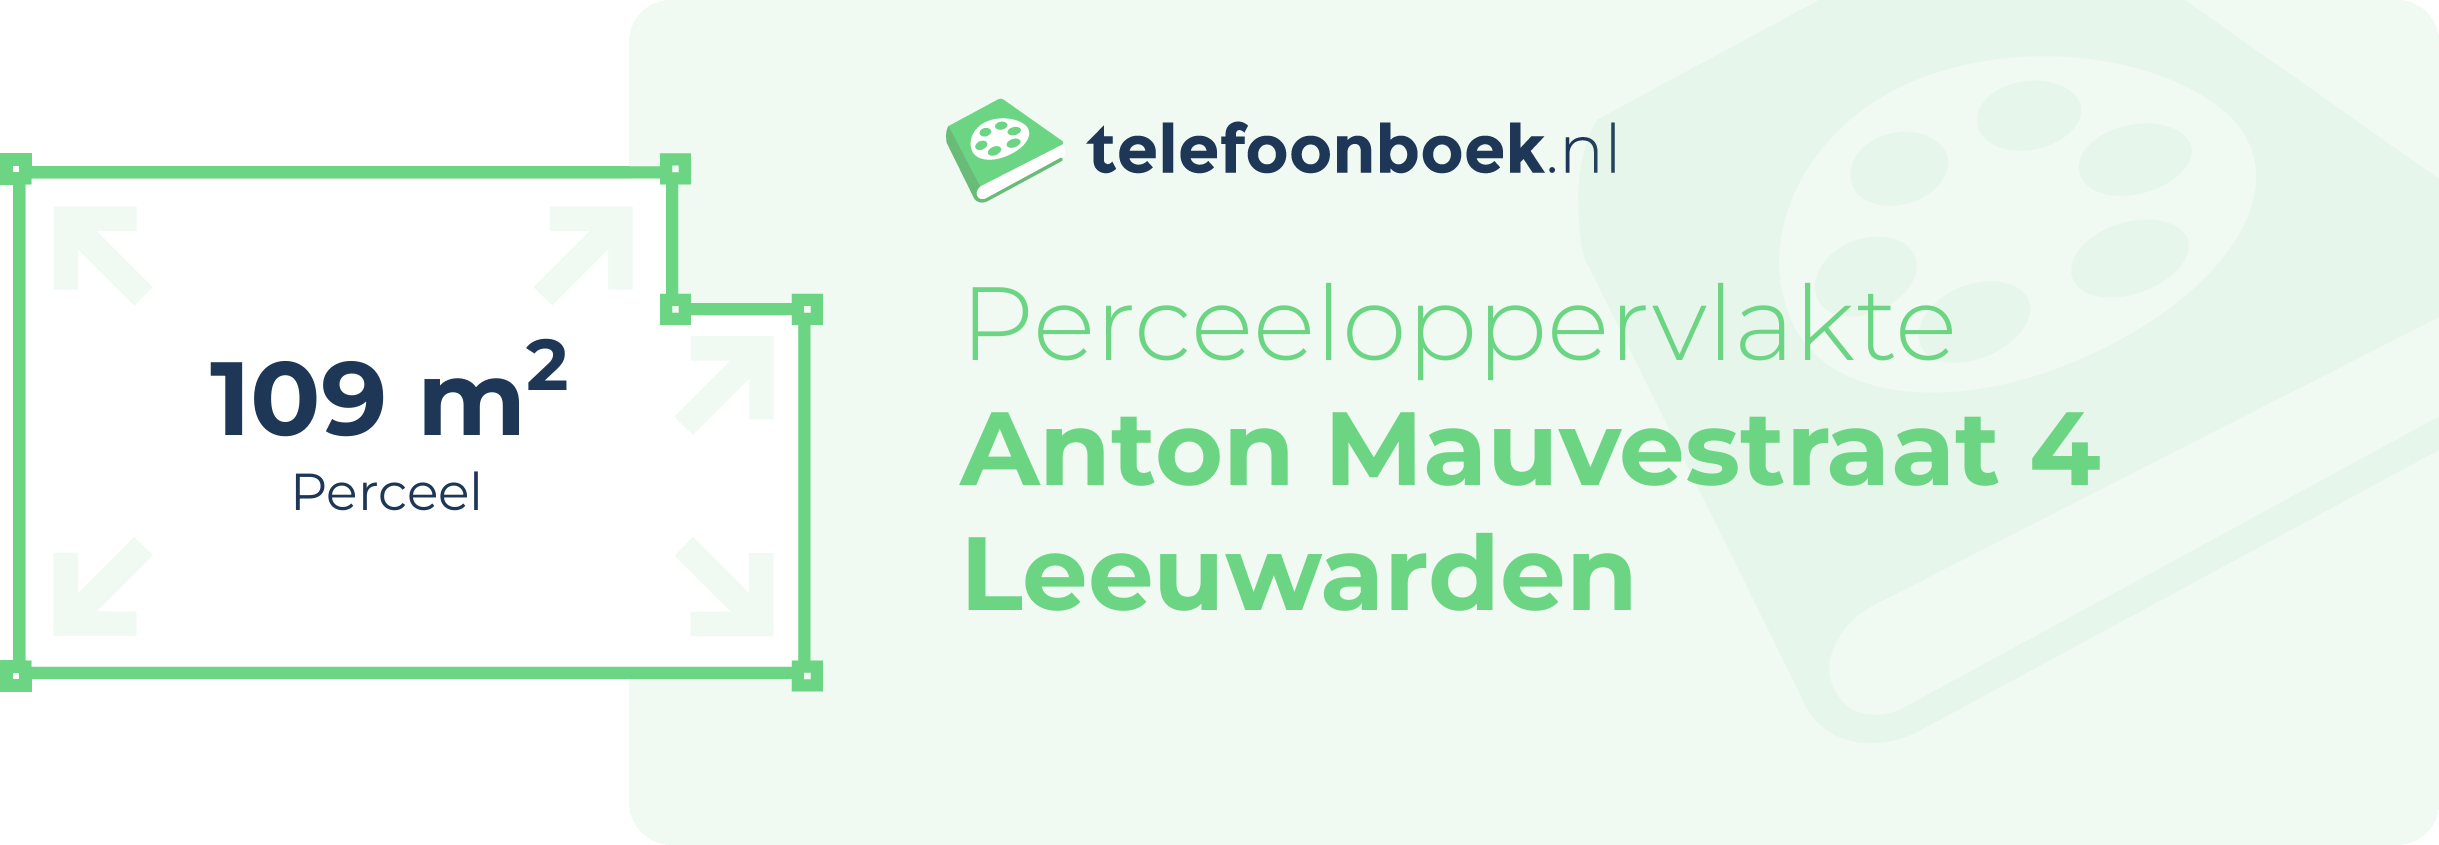 Perceeloppervlakte Anton Mauvestraat 4 Leeuwarden